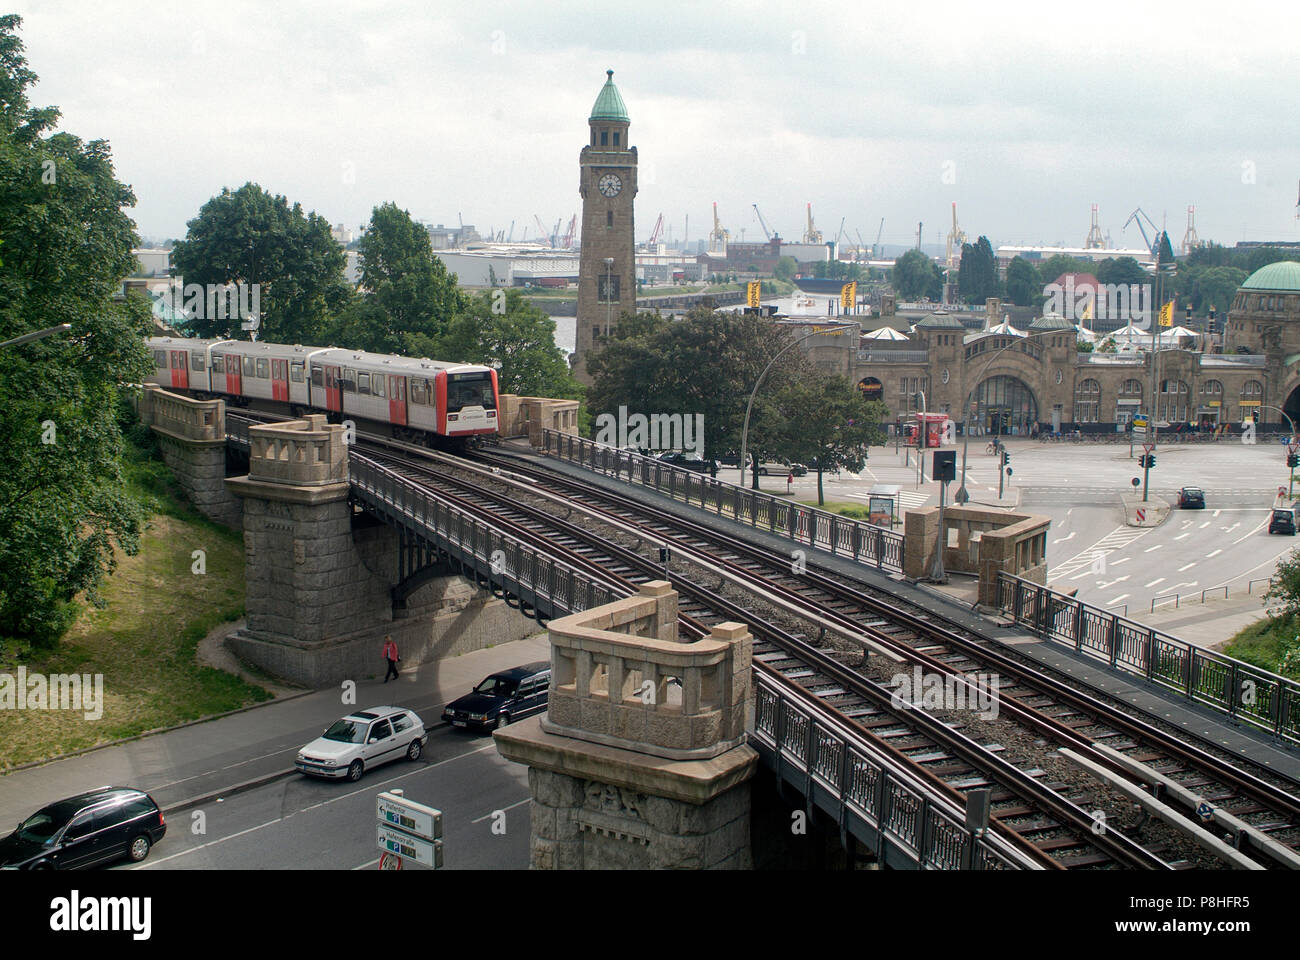 Zug der U3, U-Bahn-Linie, fährt auf einer Brücke über die Helgoländer Allee. Im Hintergrund die St. Pauli Landungsbrücken. Amburgo Foto Stock